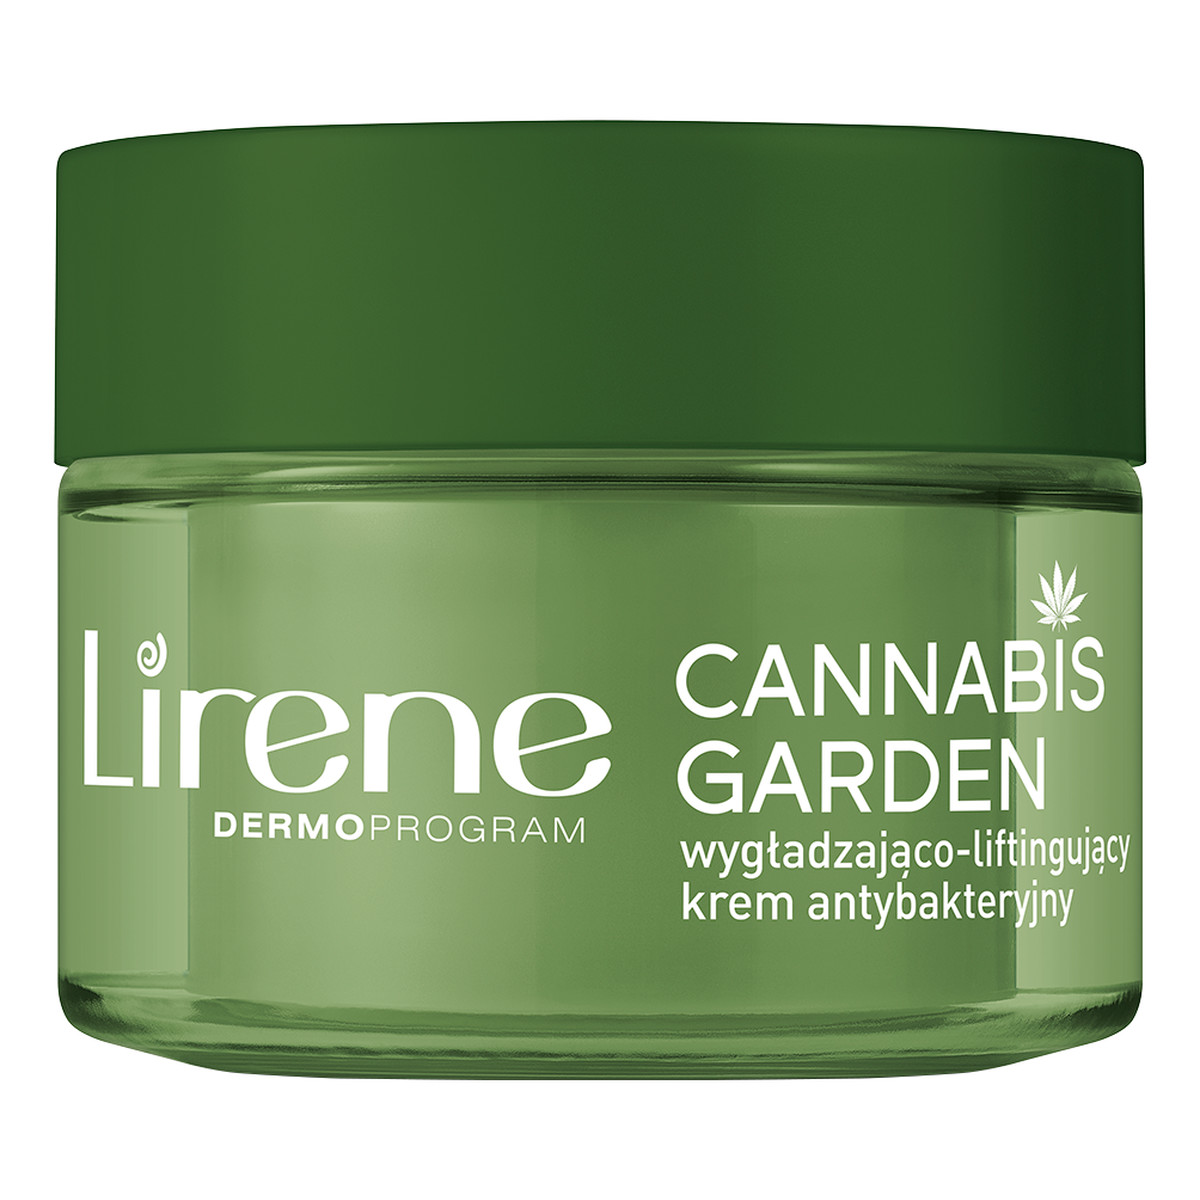 Lirene Cannabis Garden Wygładzająco-liftingujący krem antybakteryjny na dzień Cera normalna 50ml